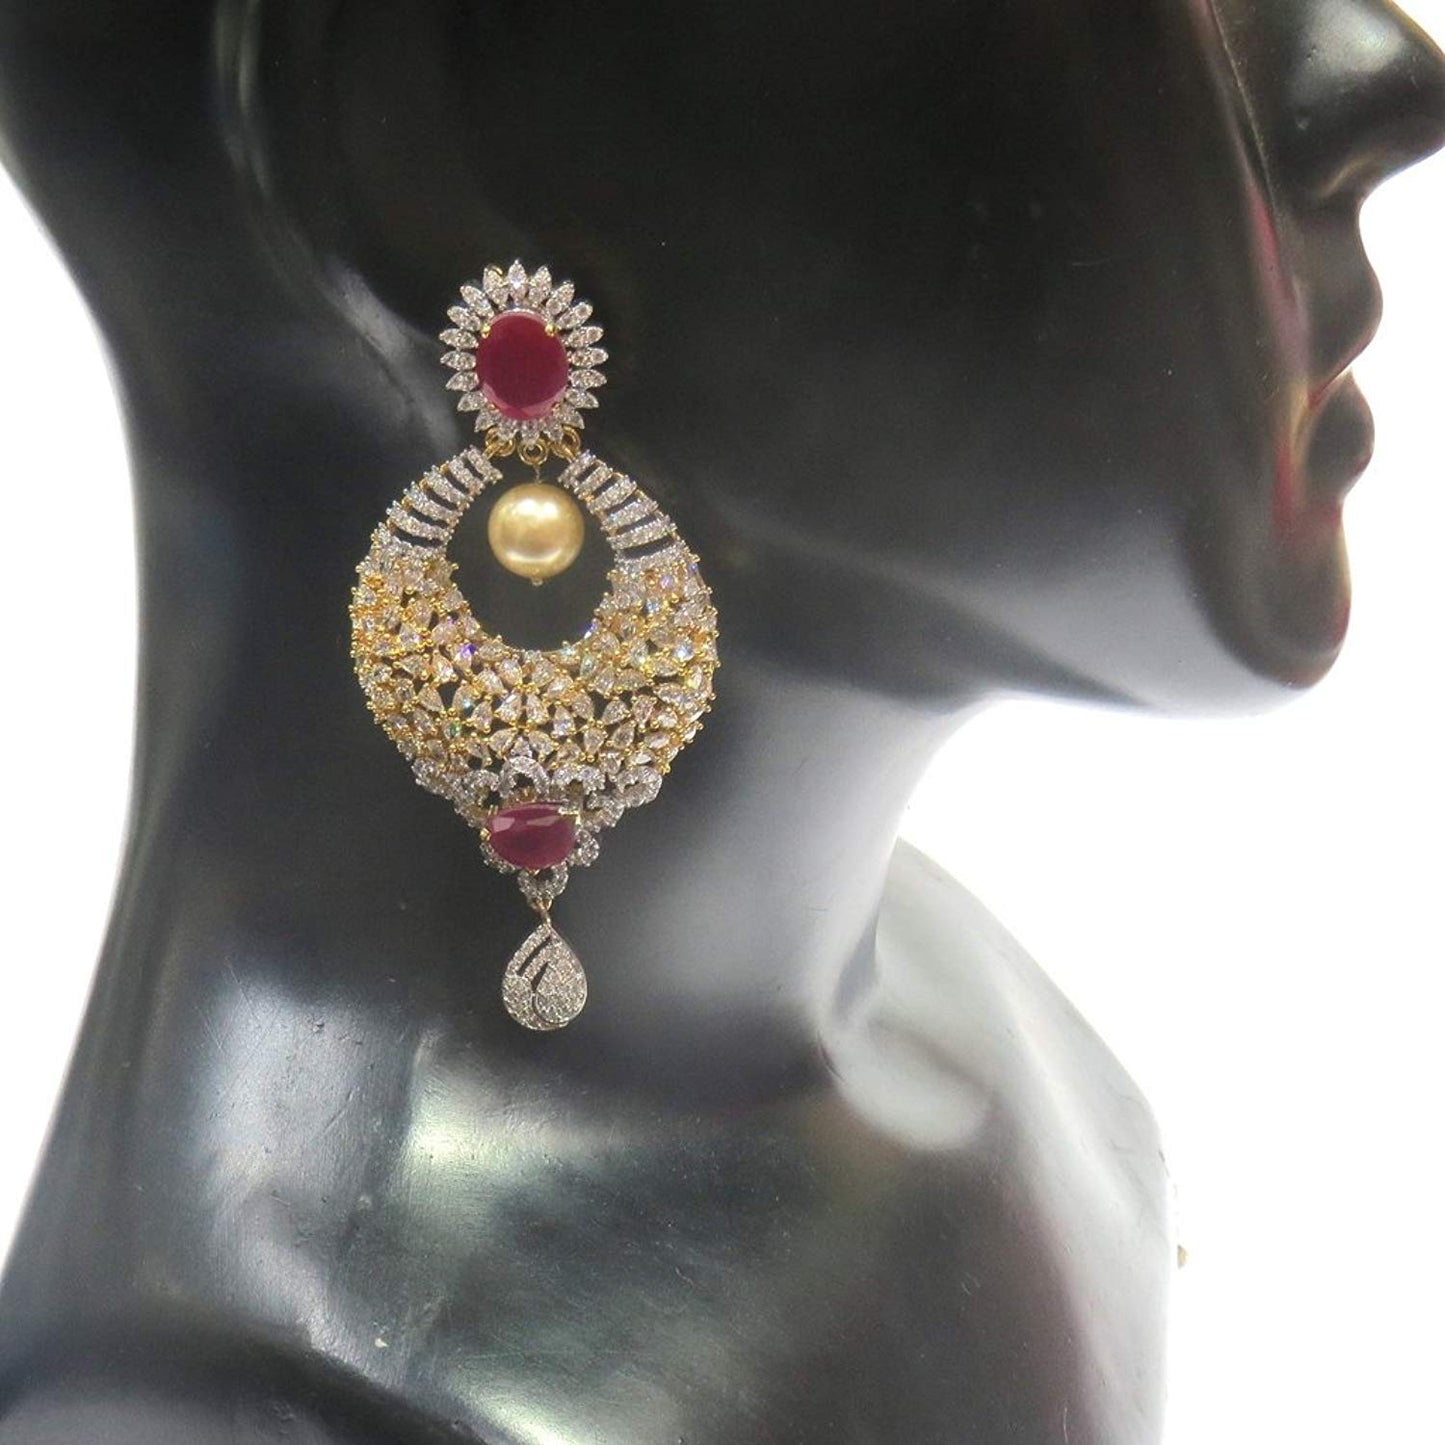 Jewelshingar Jewellery Fine Gold Plated Dangle & Drop Earrings For Girls ( 34607-ead-ruby )